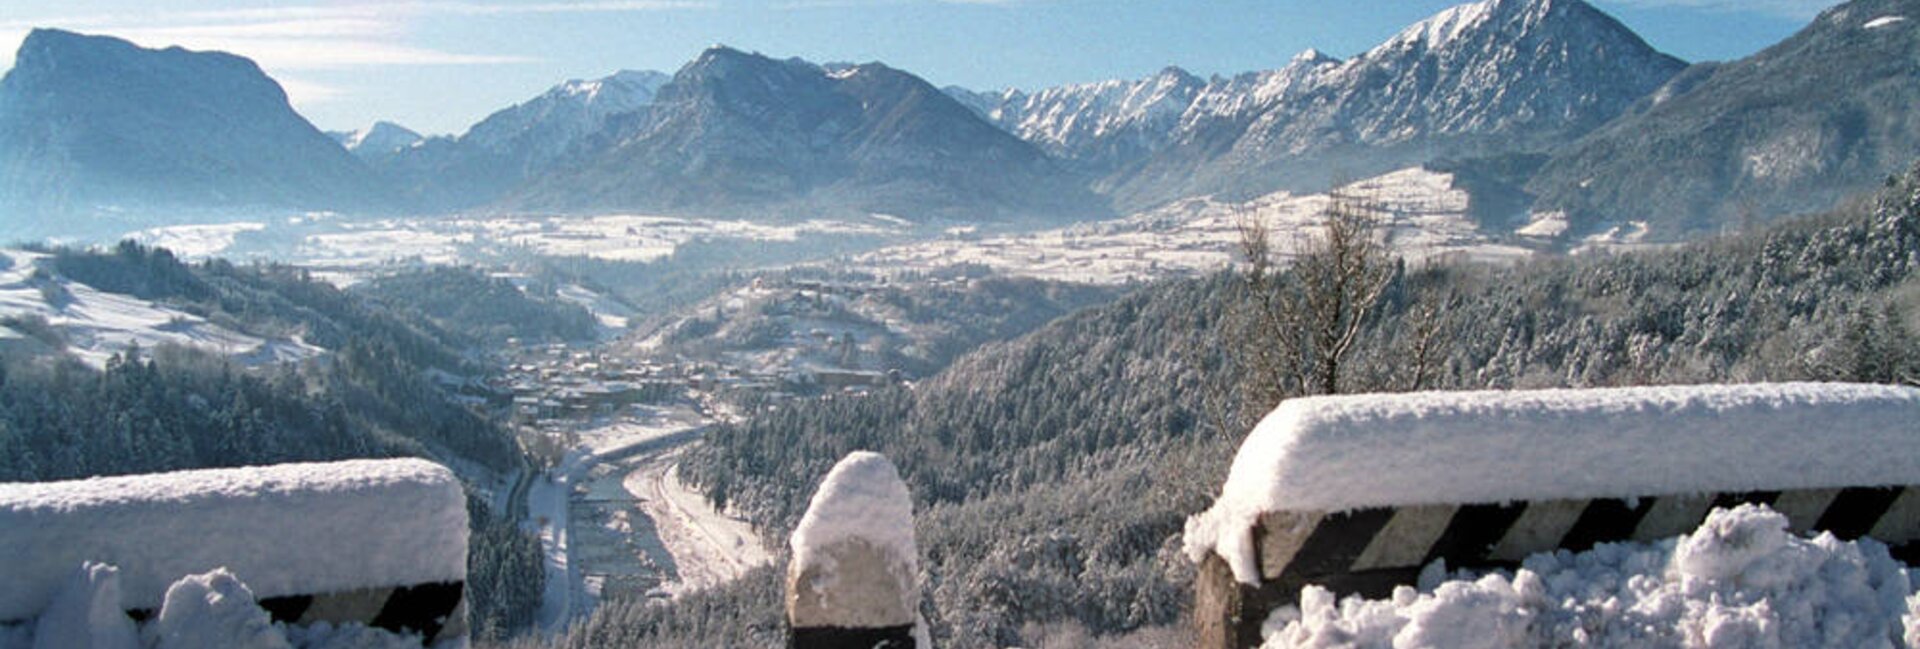 Terme di Comano-Dolomiti di Brenta, panoramica inverno